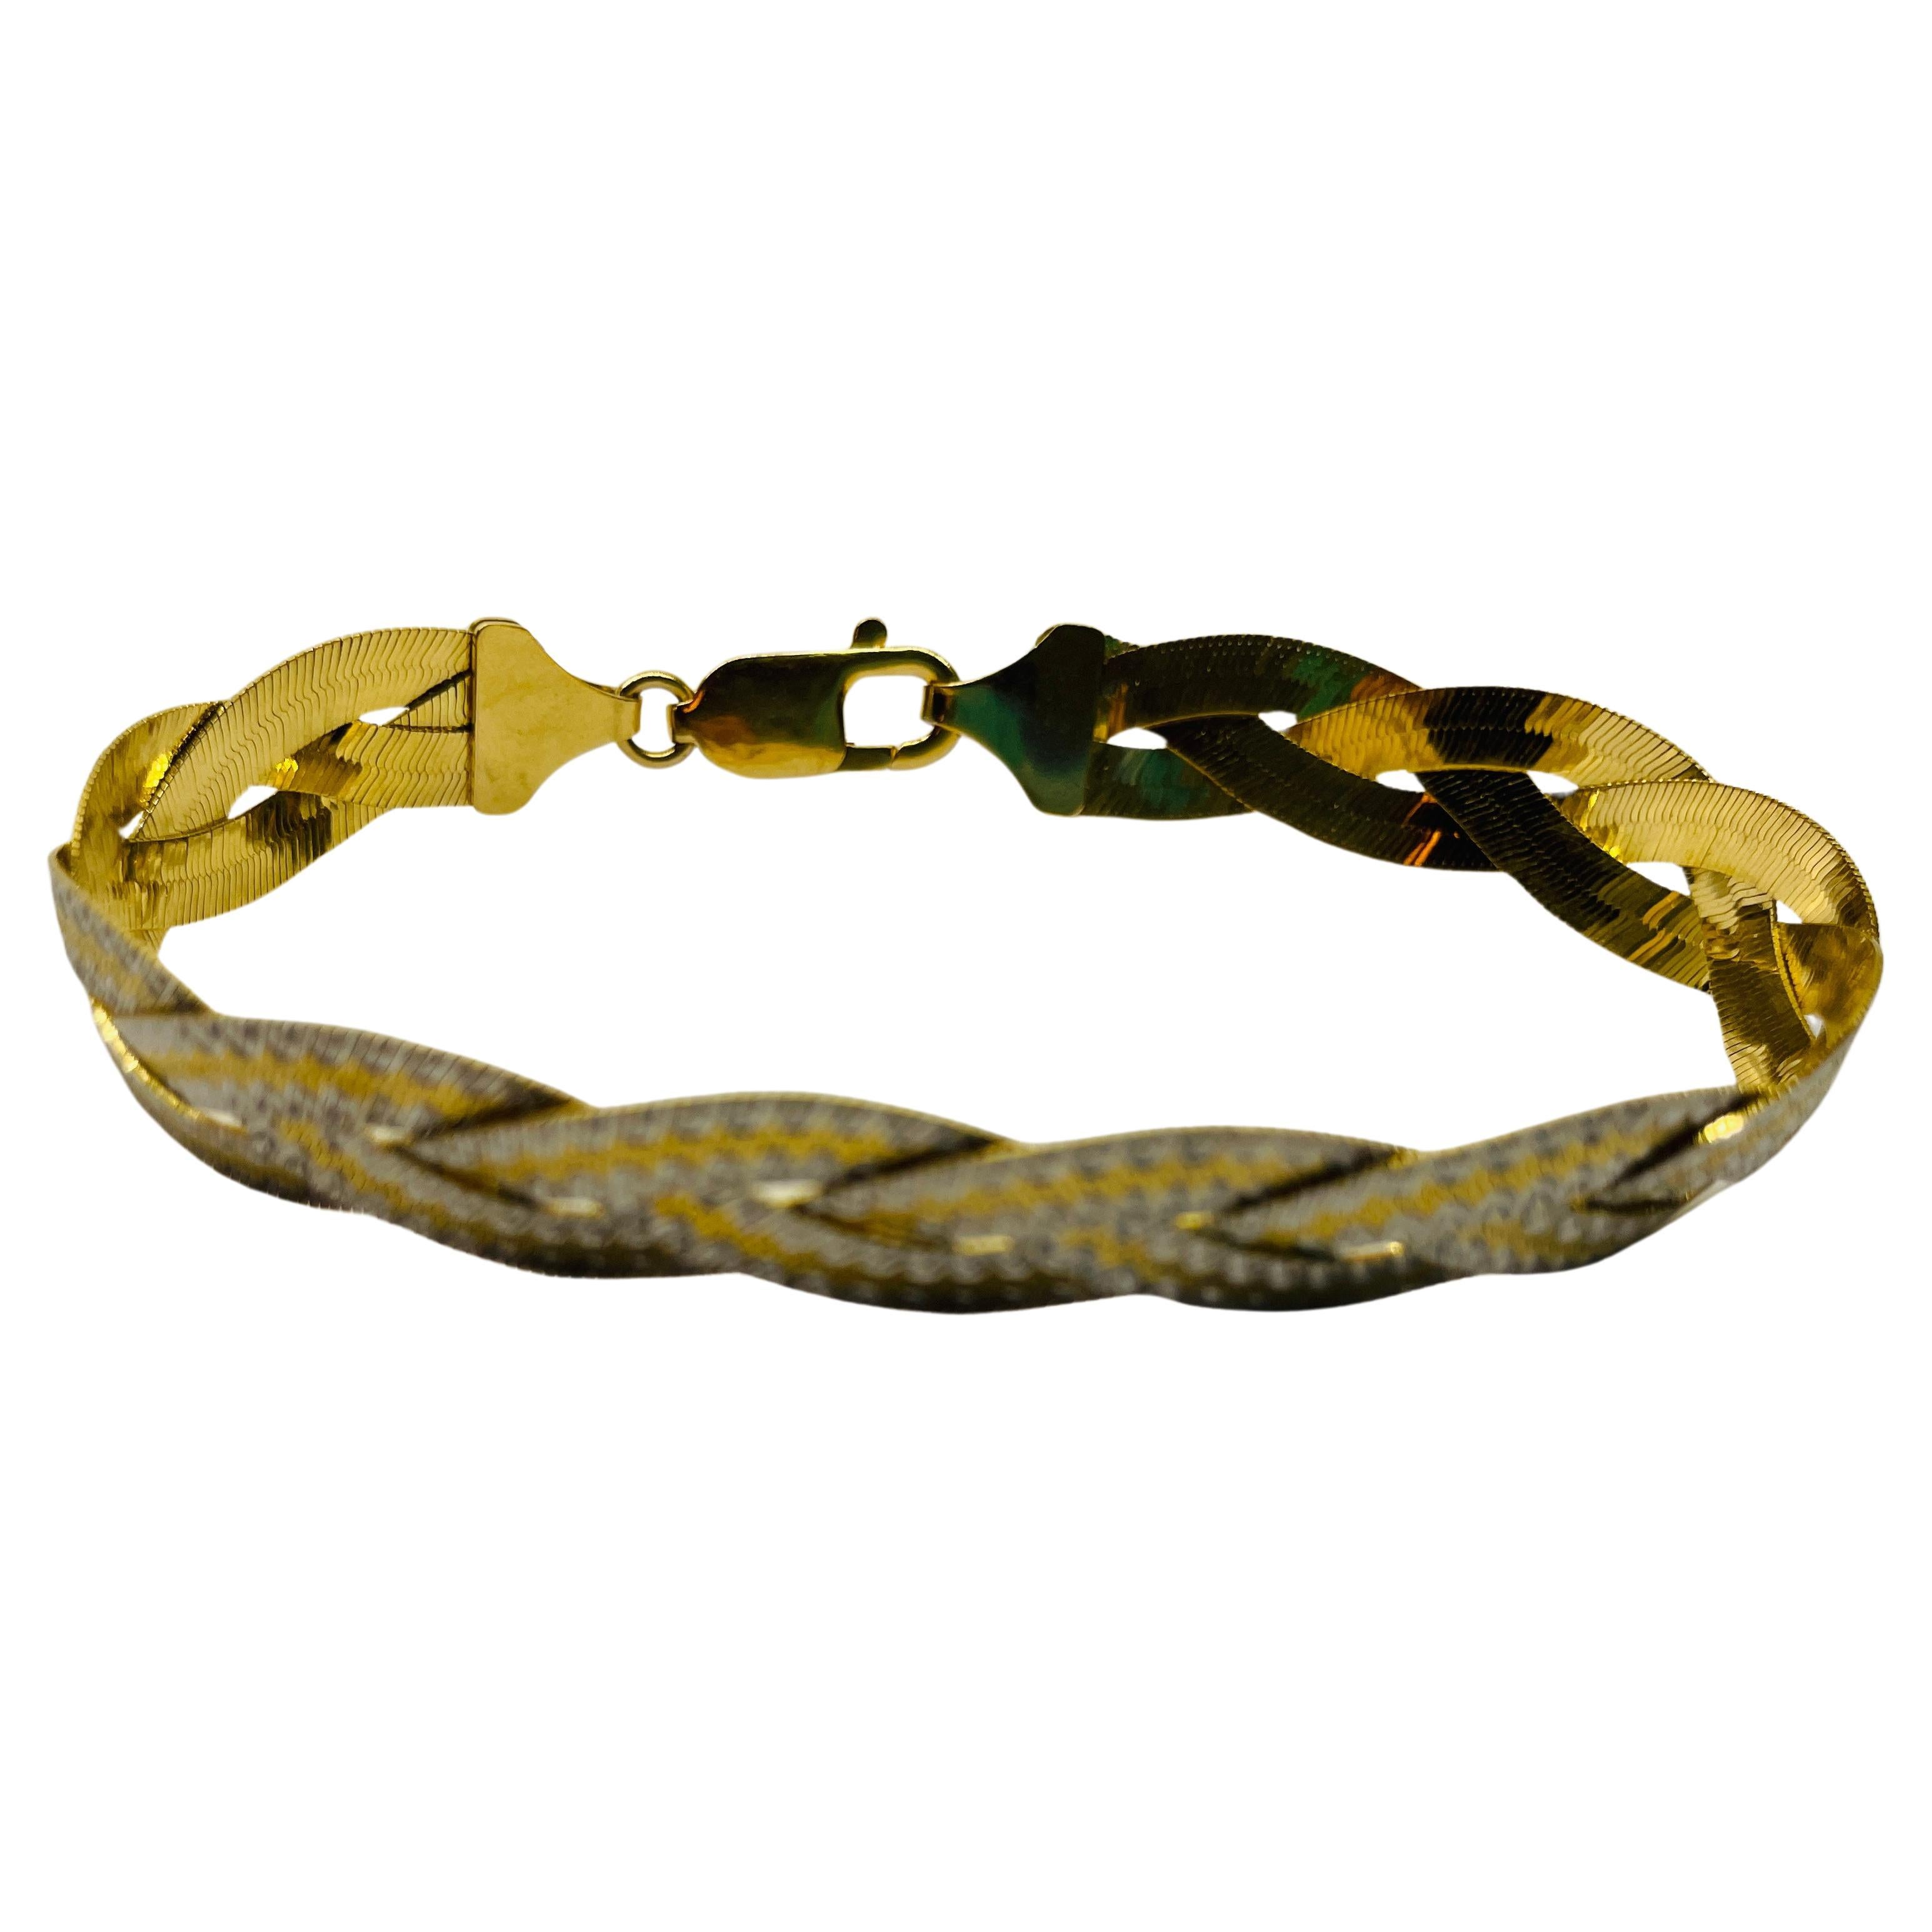 Zweifarbiges geflochtenes Wendearmband aus 18k Gold, 
Gelbgold und Weißgold.  
Eine Seite des Armbands im französischen Art-Déco-Stil ist zweifarbig mit weißen und goldenen Streifen, die sich auf dem geflochtenen Fischgrätenarmband abwechseln - die